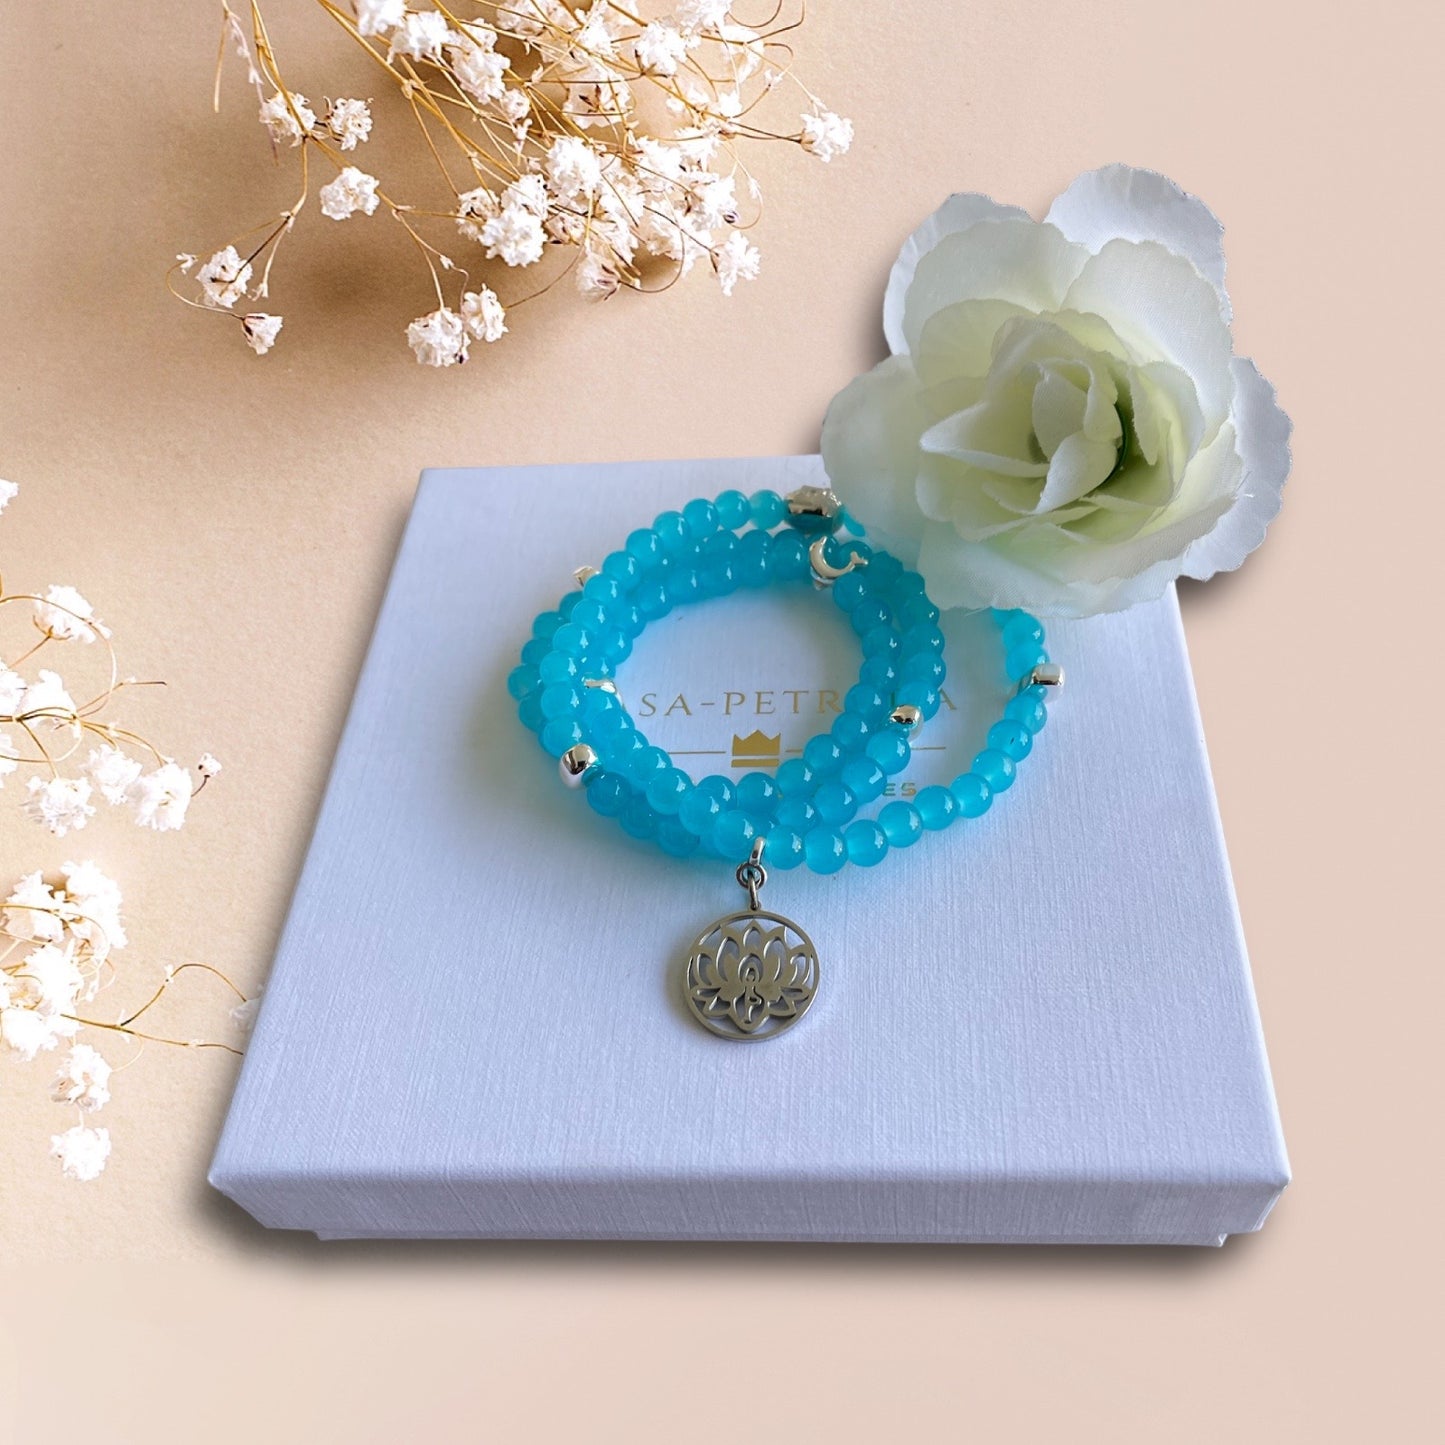 Armband aus Cateye Perlen in türkis mit einer Buddha Perle und einem Anhänger Lotusblume